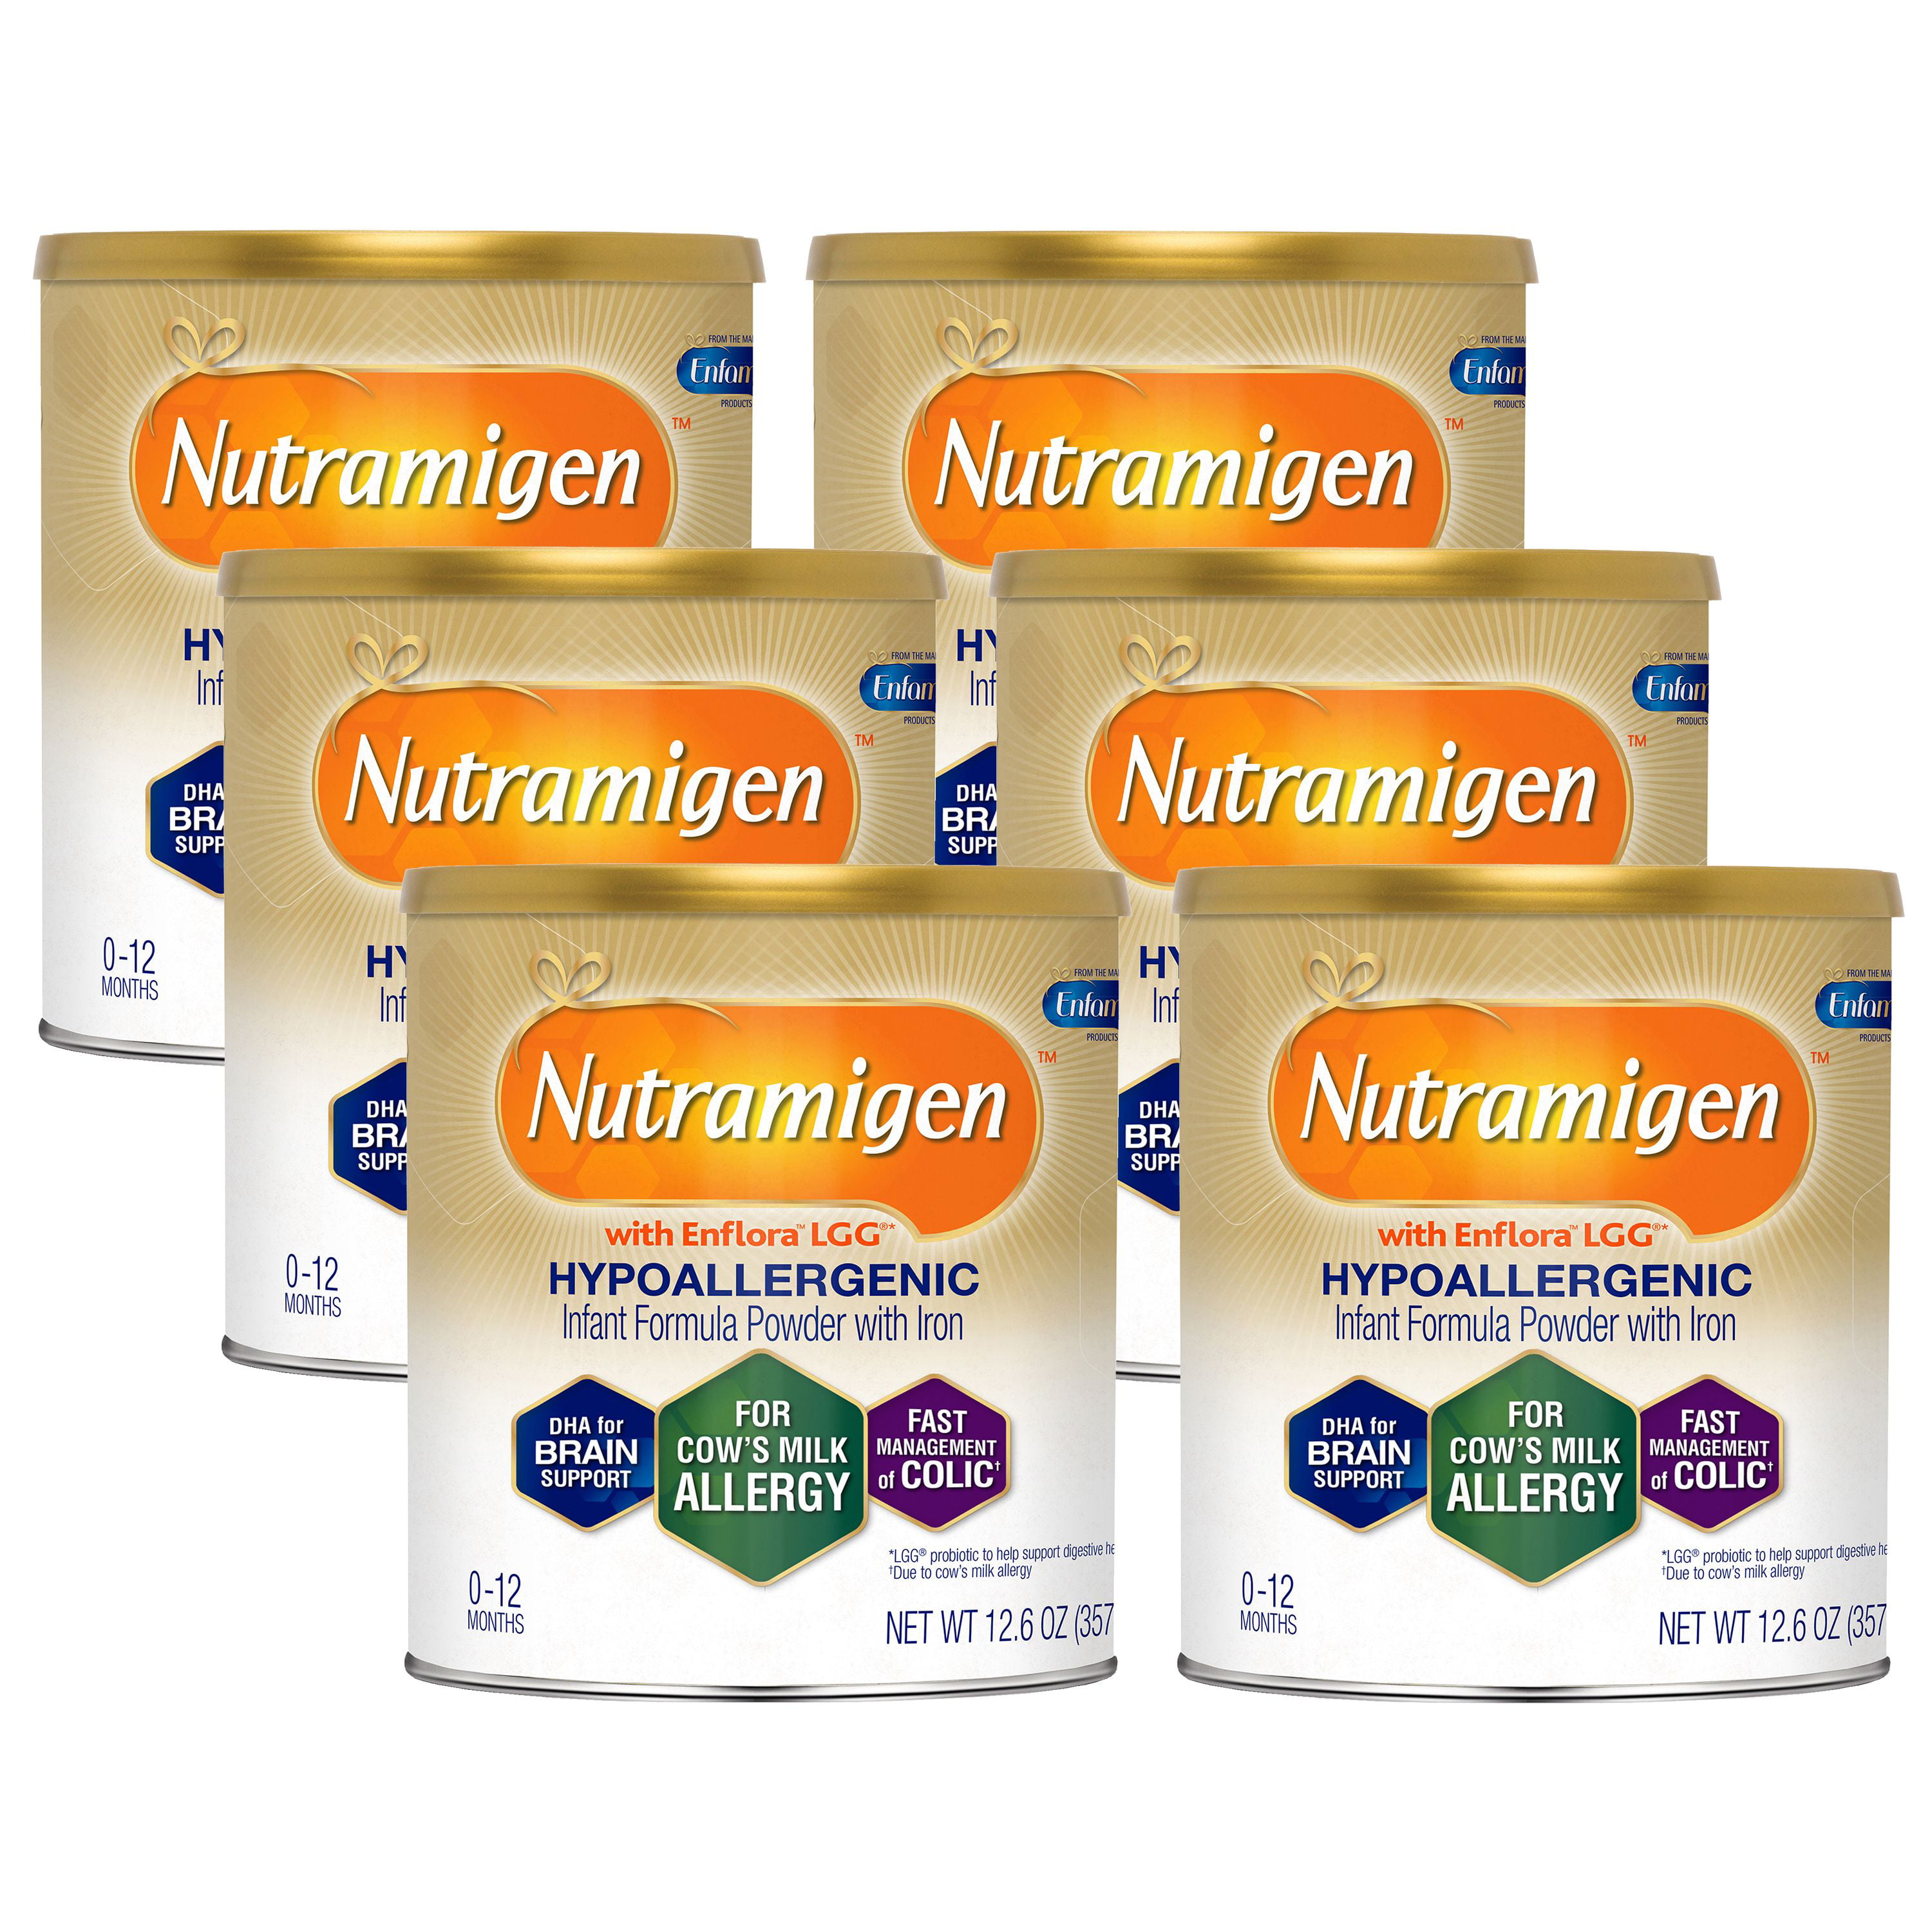 nutramigen with enflora lgg hypoallergenic infant formula